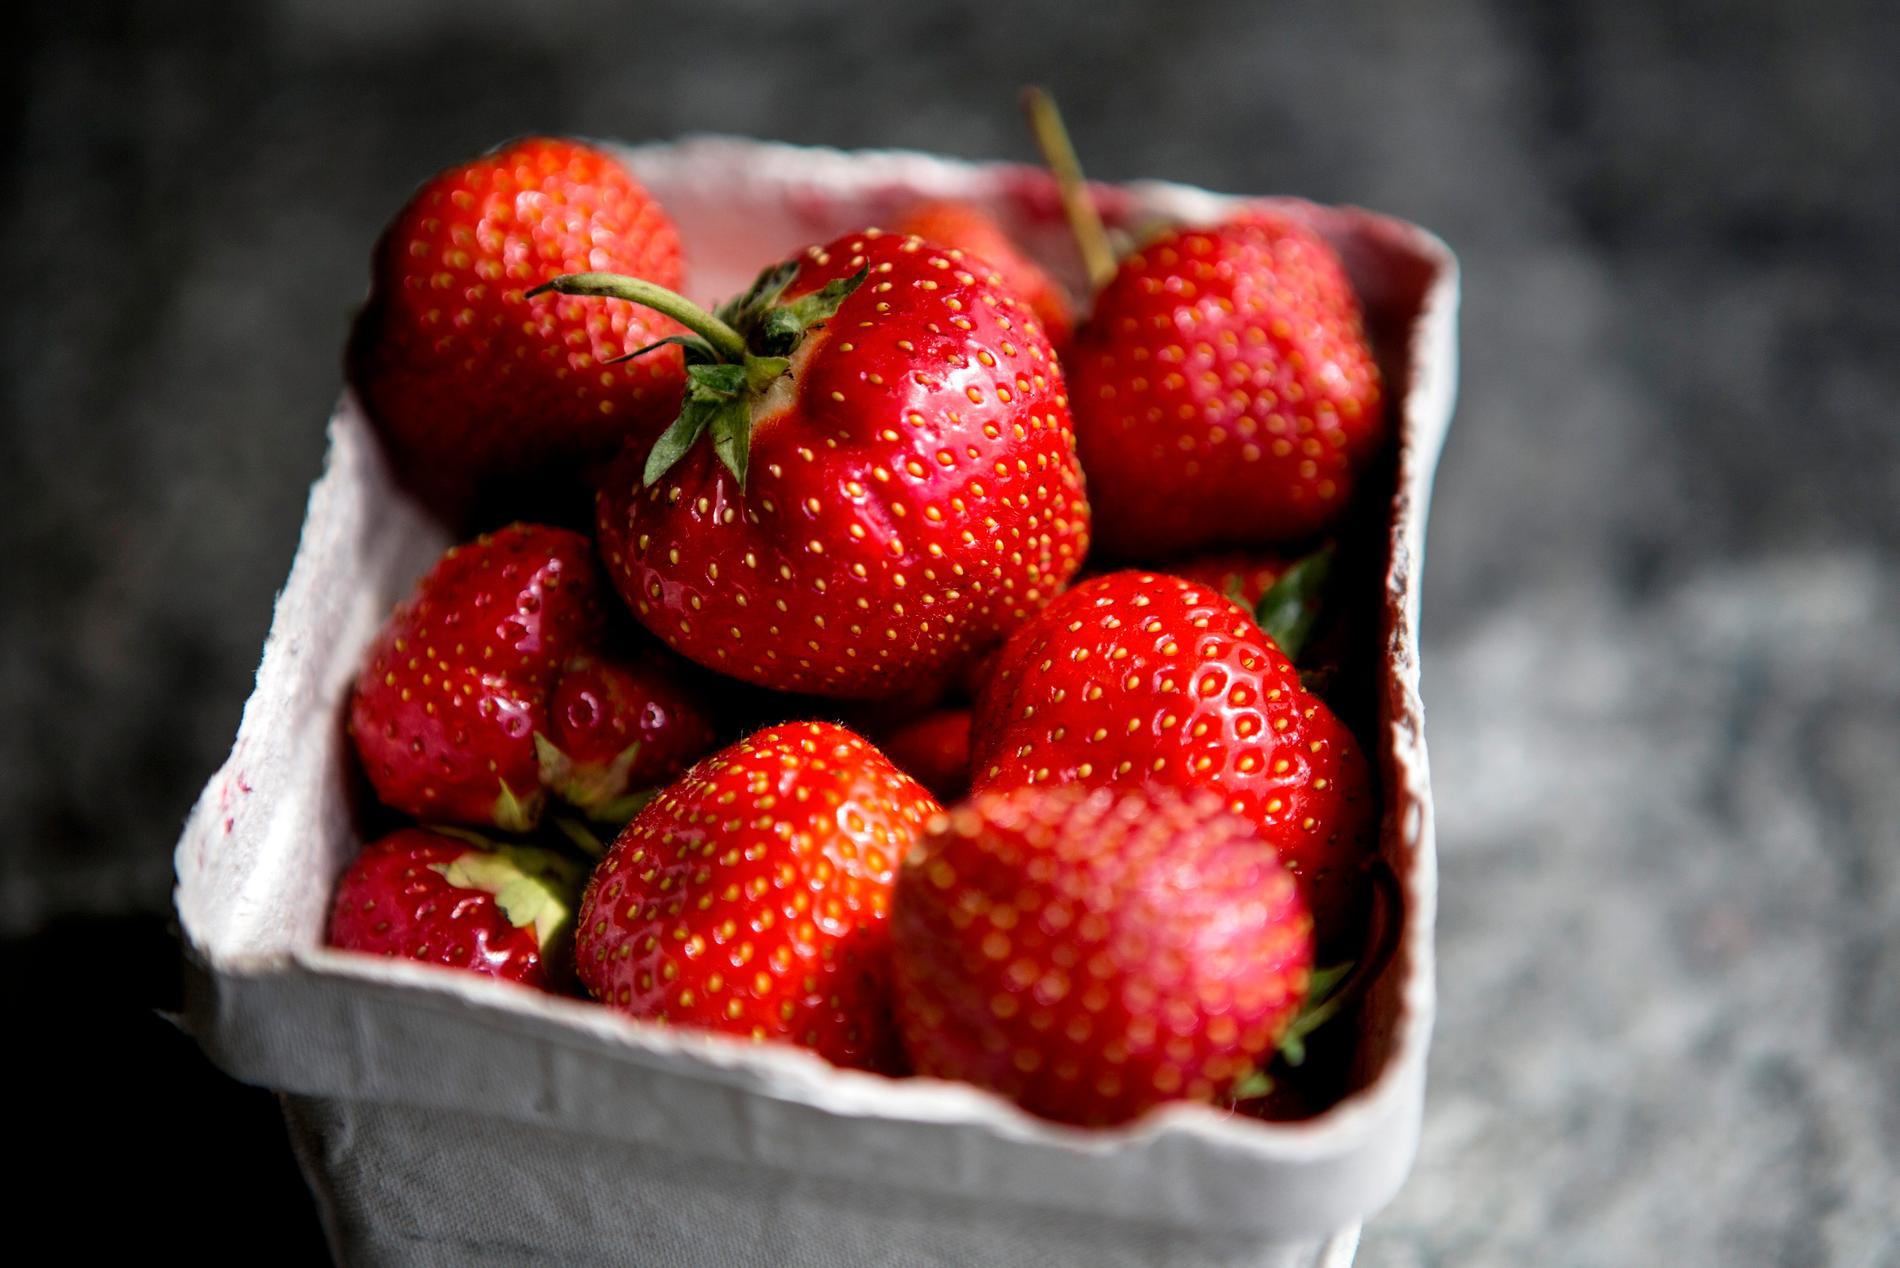 Forskarna vill ta fram bättre råd och tips kring jordgubbsodling. Arkivbild.